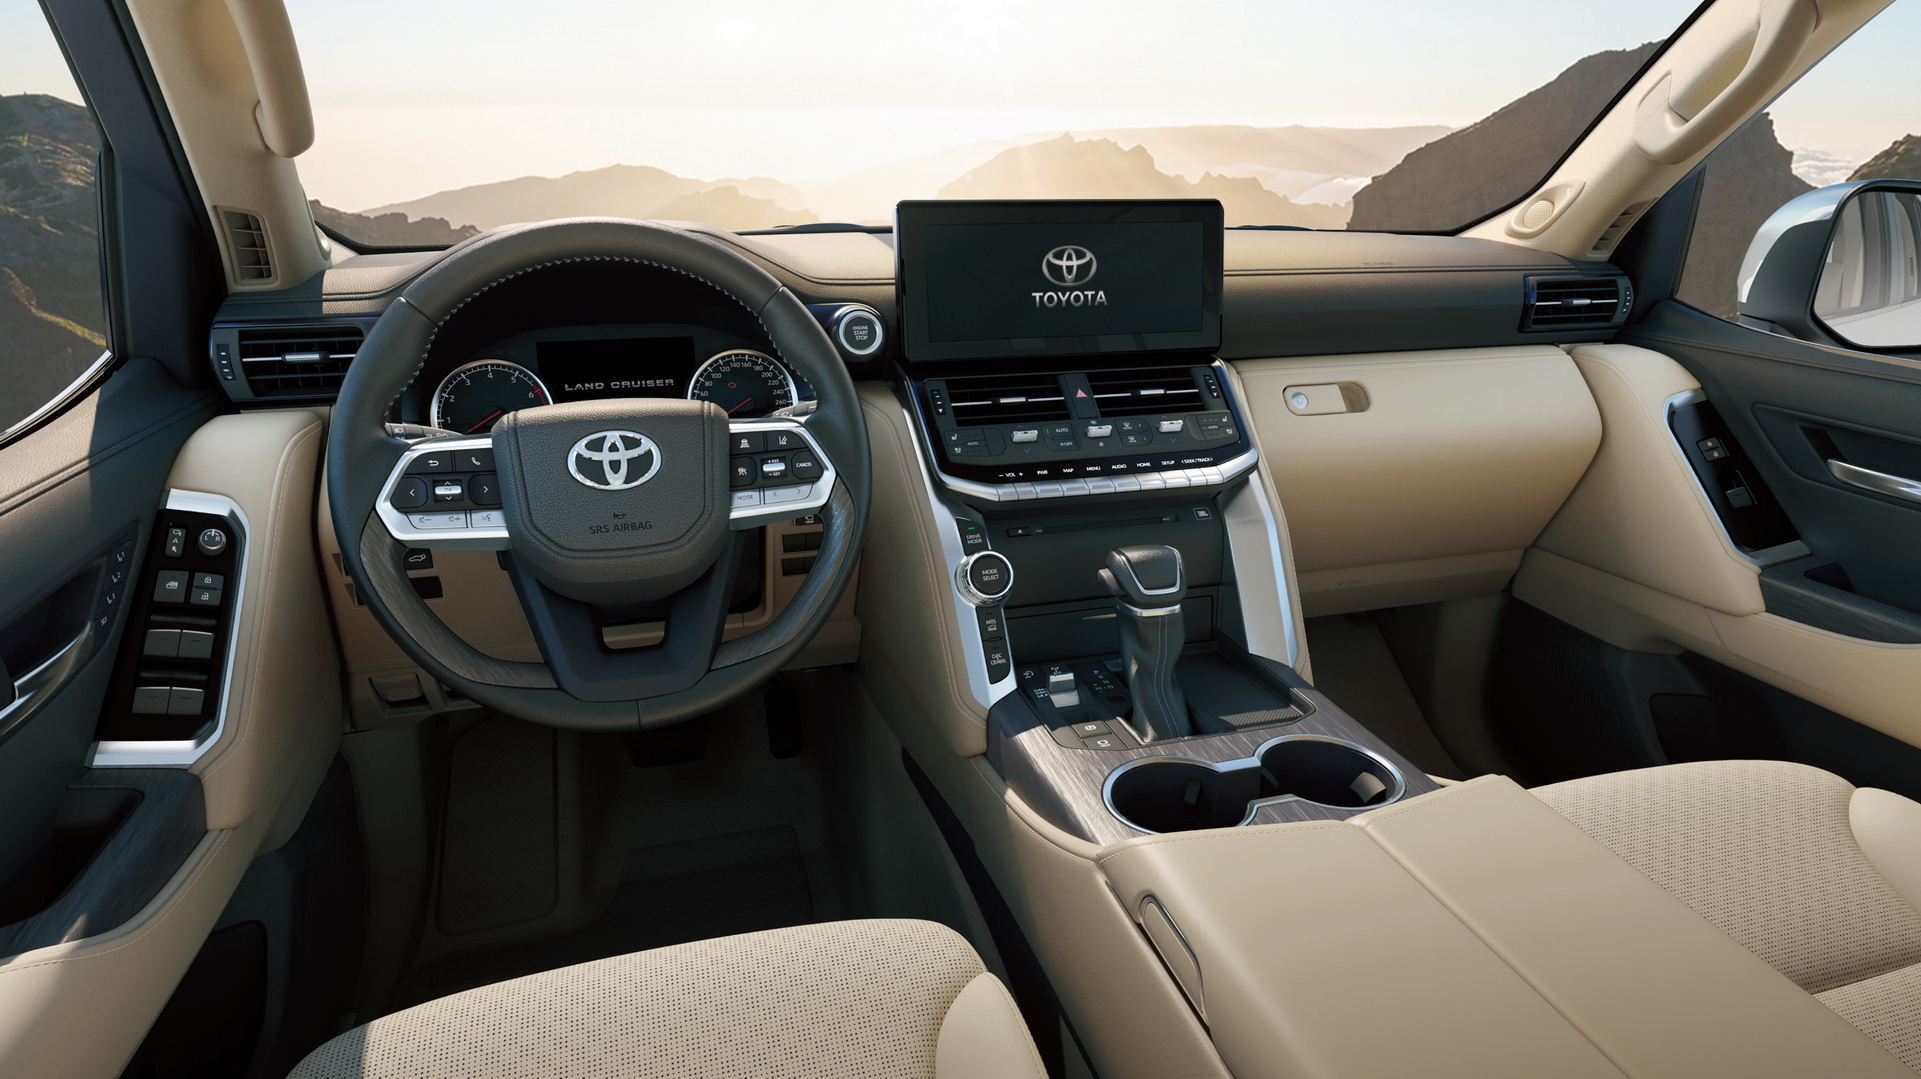 Yeni nesil Toyota Land Cruiser tanıtıldı: GR Sport versiyonu da yolda